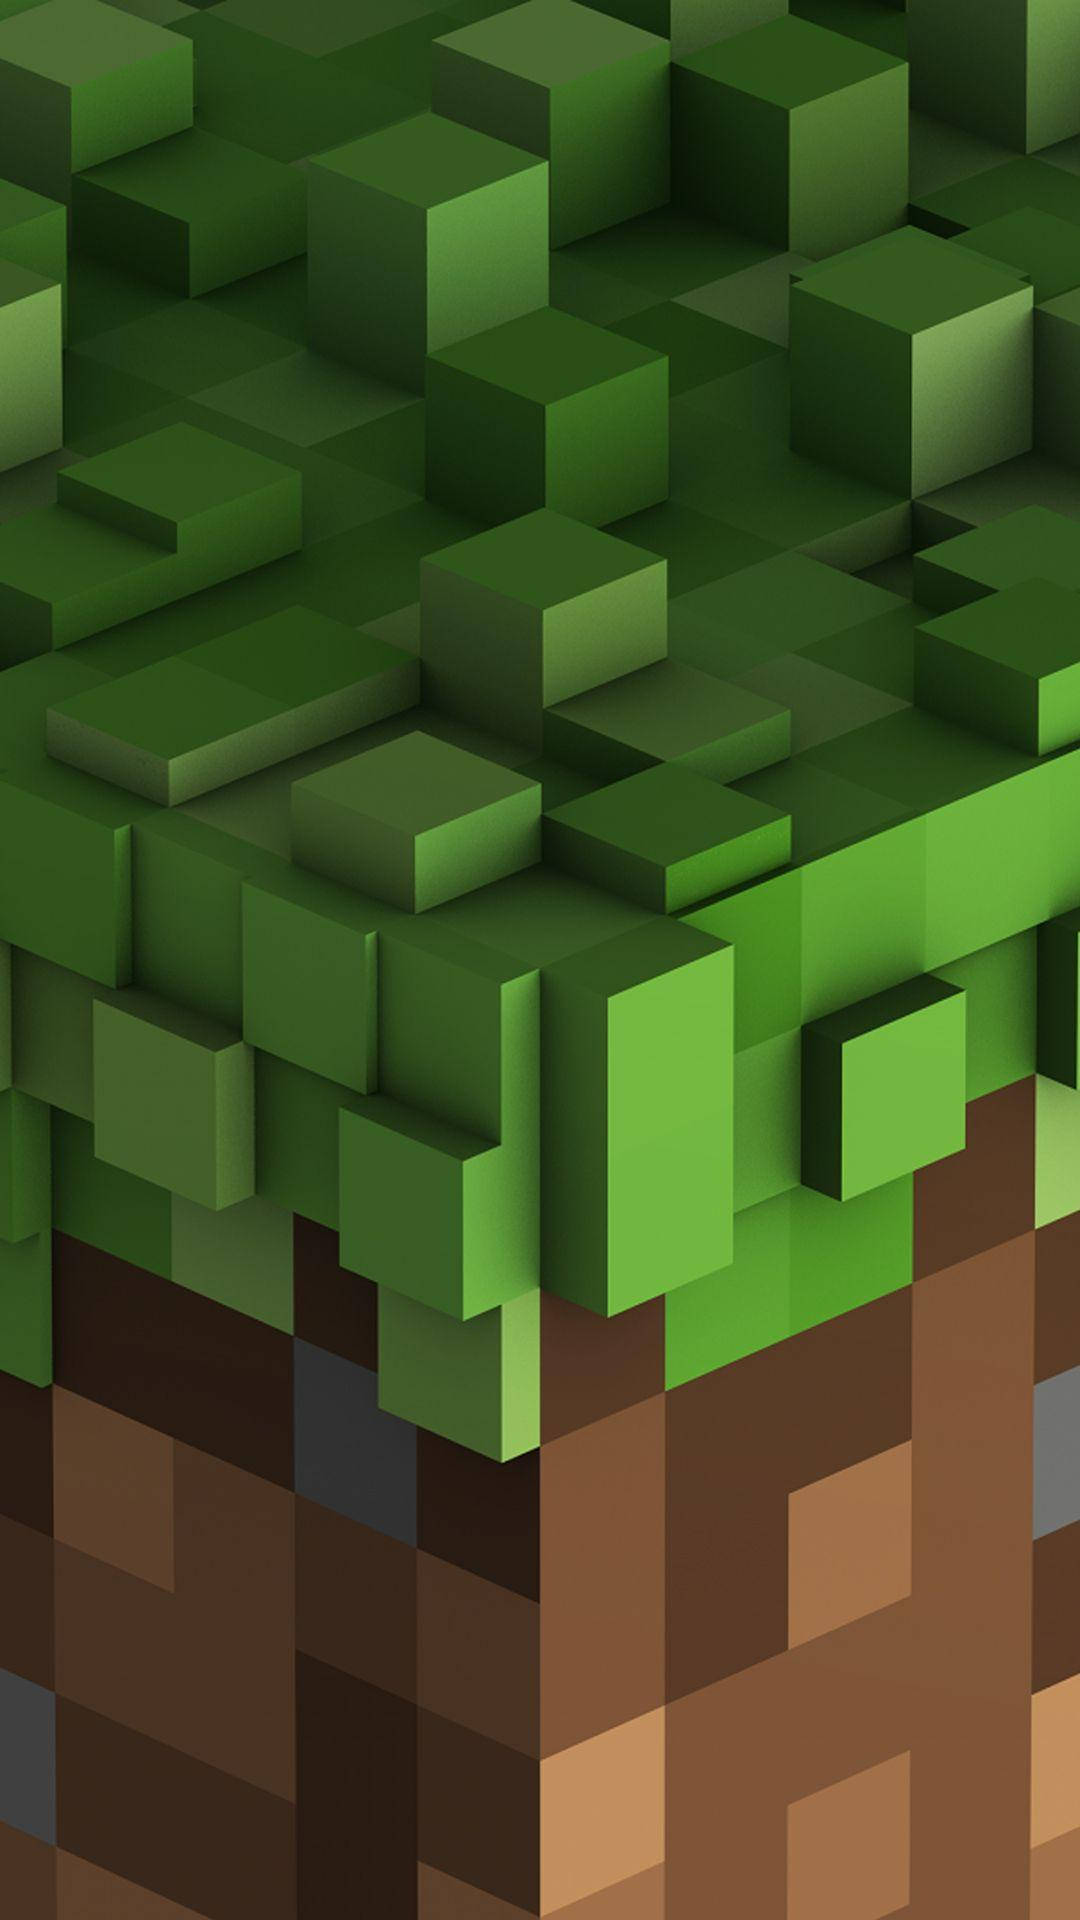 Teléfonocon Temática De Minecraft De Color Verde Y Marrón. Fondo de pantalla